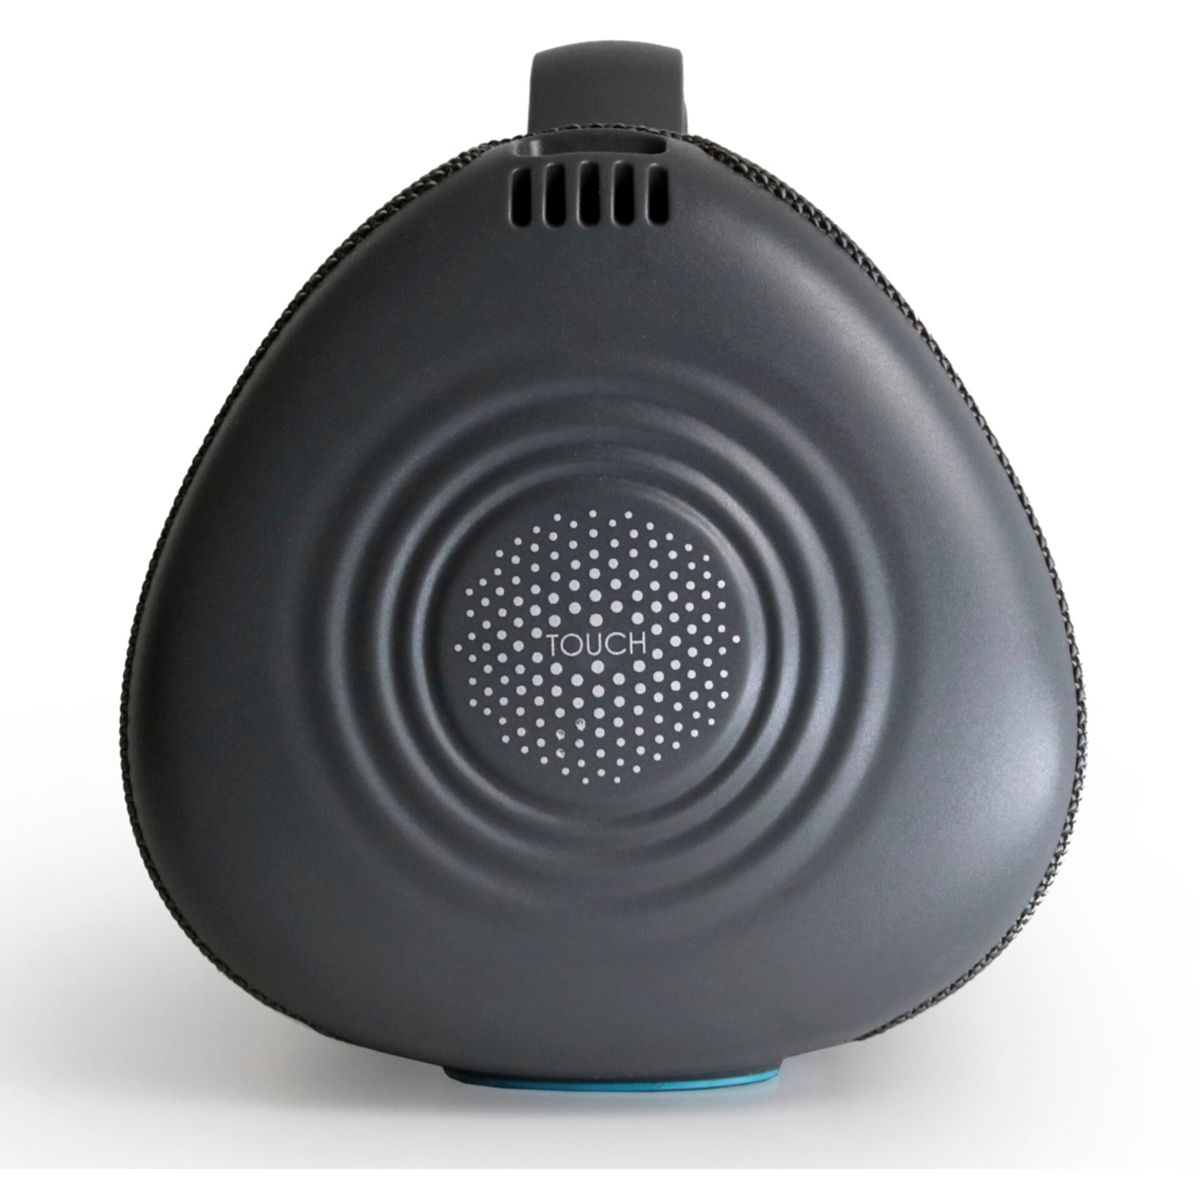 BOOMPODS Rhythm / 60 Grey/Blue grau blau Bluetooth-Lautsprecher